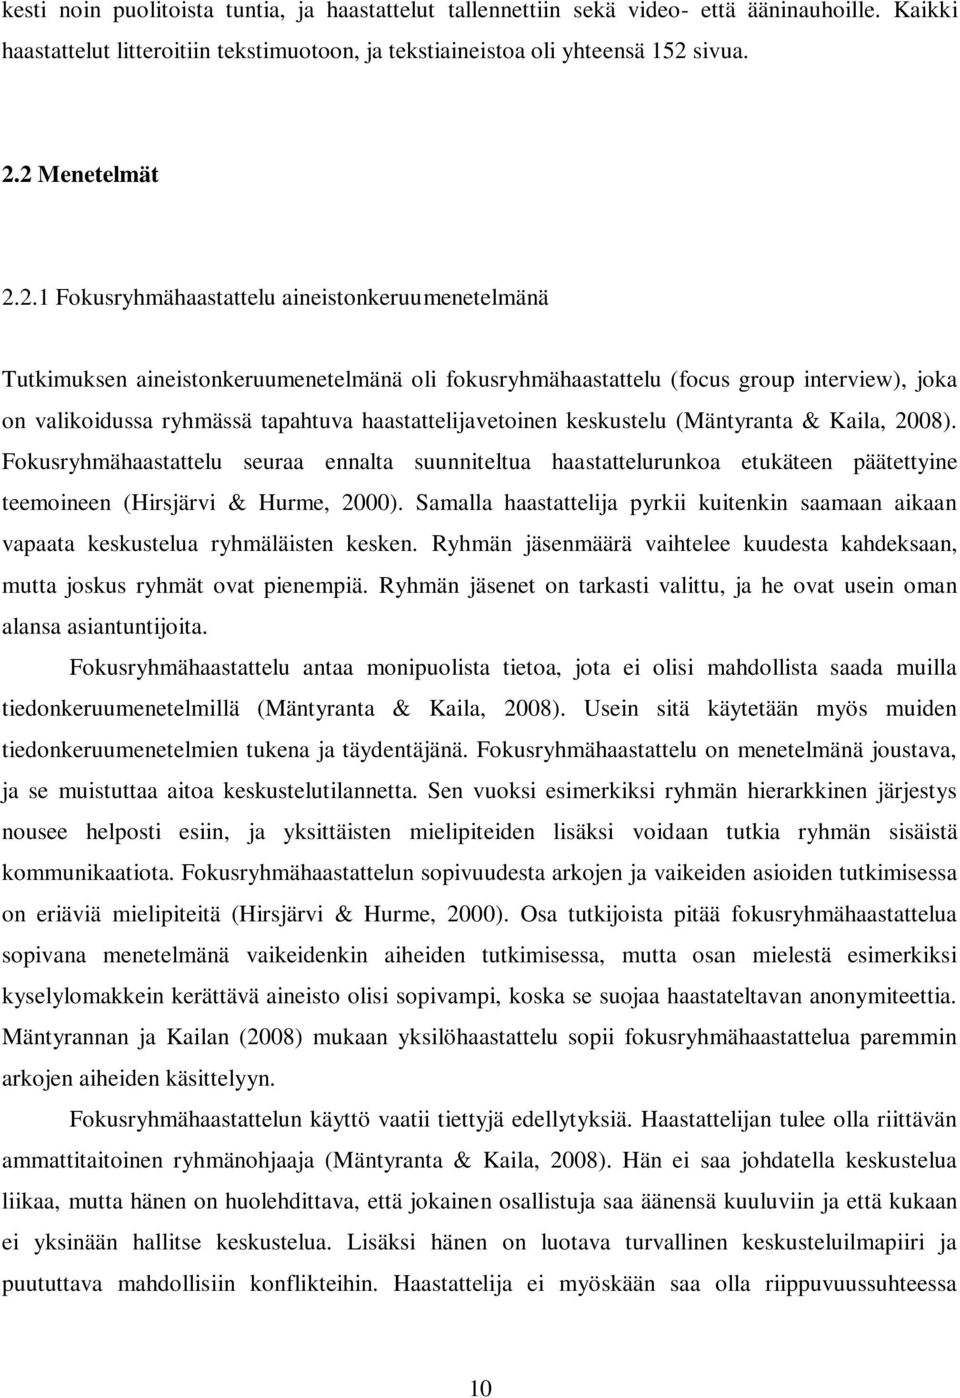 haastattelijavetoinen keskustelu (Mäntyranta & Kaila, 2008). Fokusryhmähaastattelu seuraa ennalta suunniteltua haastattelurunkoa etukäteen päätettyine teemoineen (Hirsjärvi & Hurme, 2000).